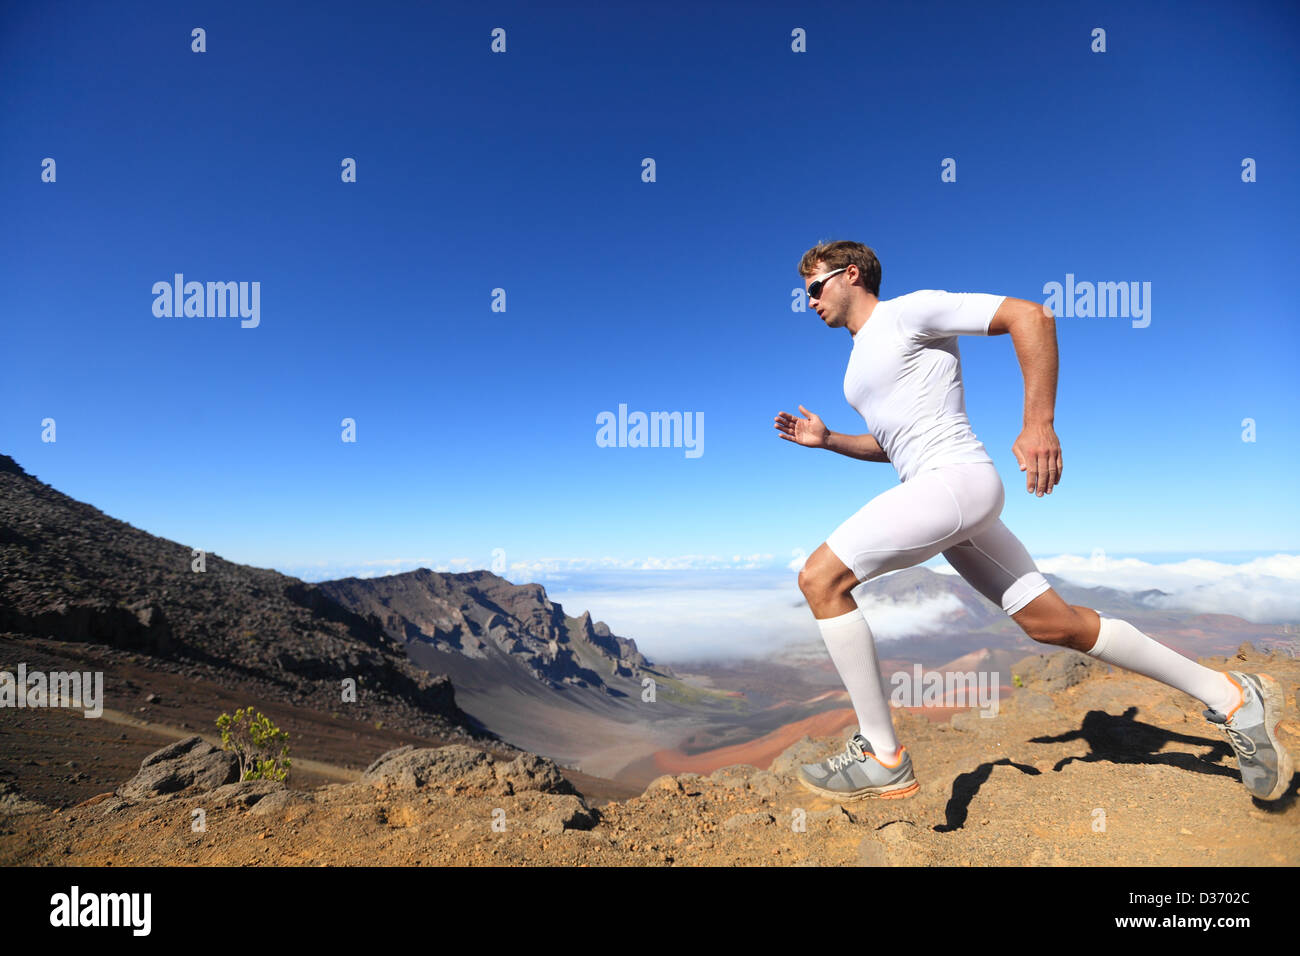 Sportlicher Fit sportlicher Mann in Kompression Kleidung laufen Marathon laufen in der malerischen Natur Stockfoto